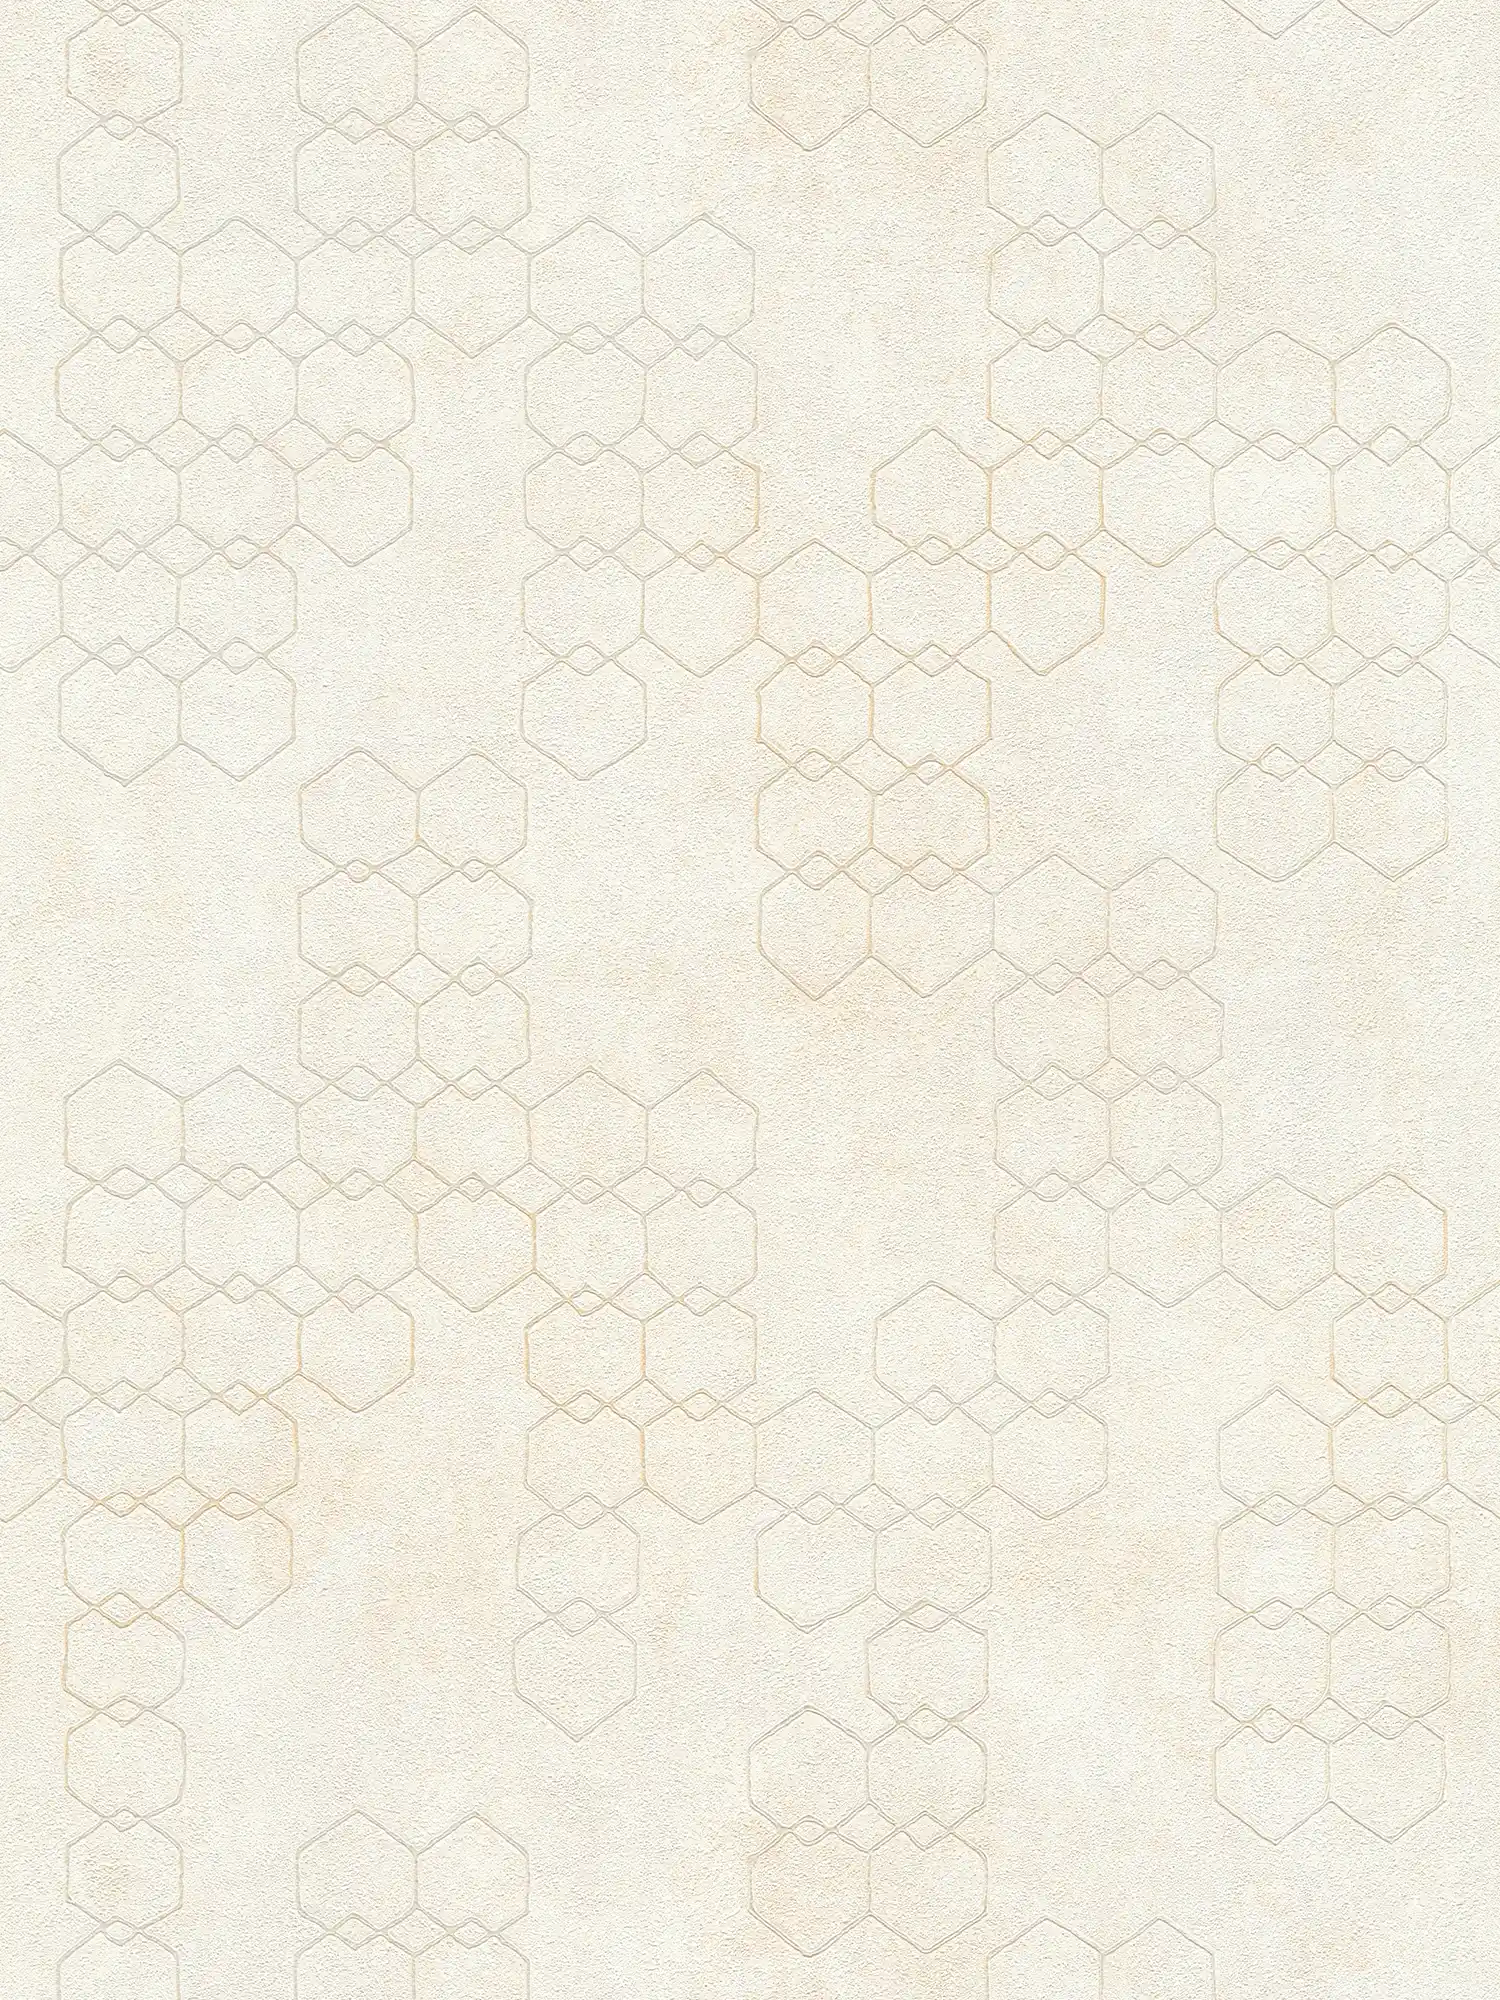 Geometrisch patroonbehang in industriële stijl - crème, grijs, wit
